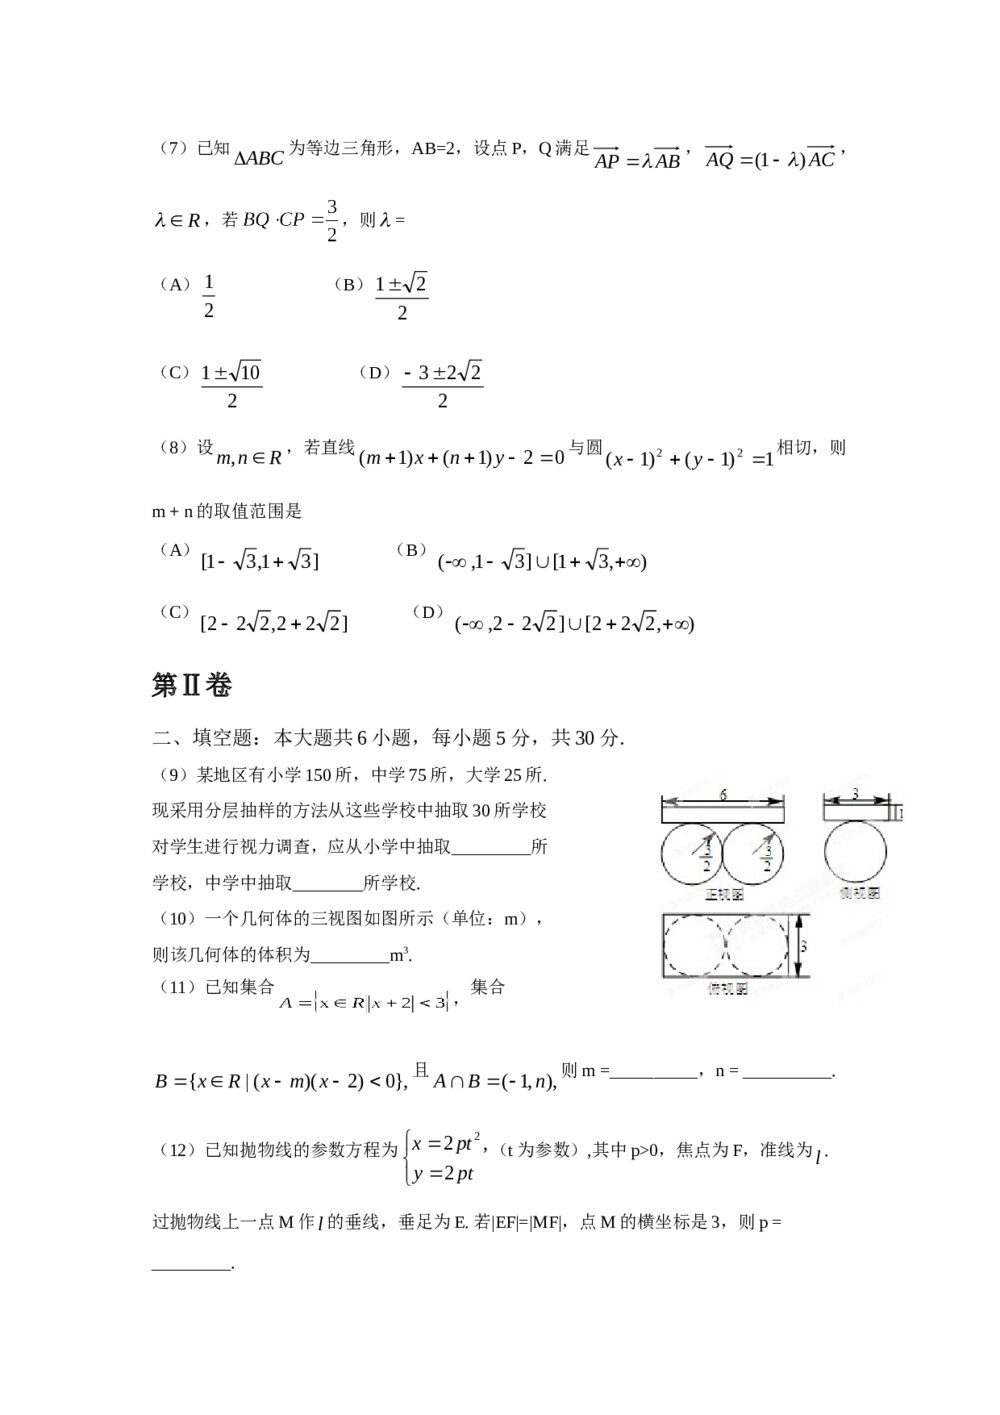 2012年天津高考(理科)数学试题试卷+答案解析2